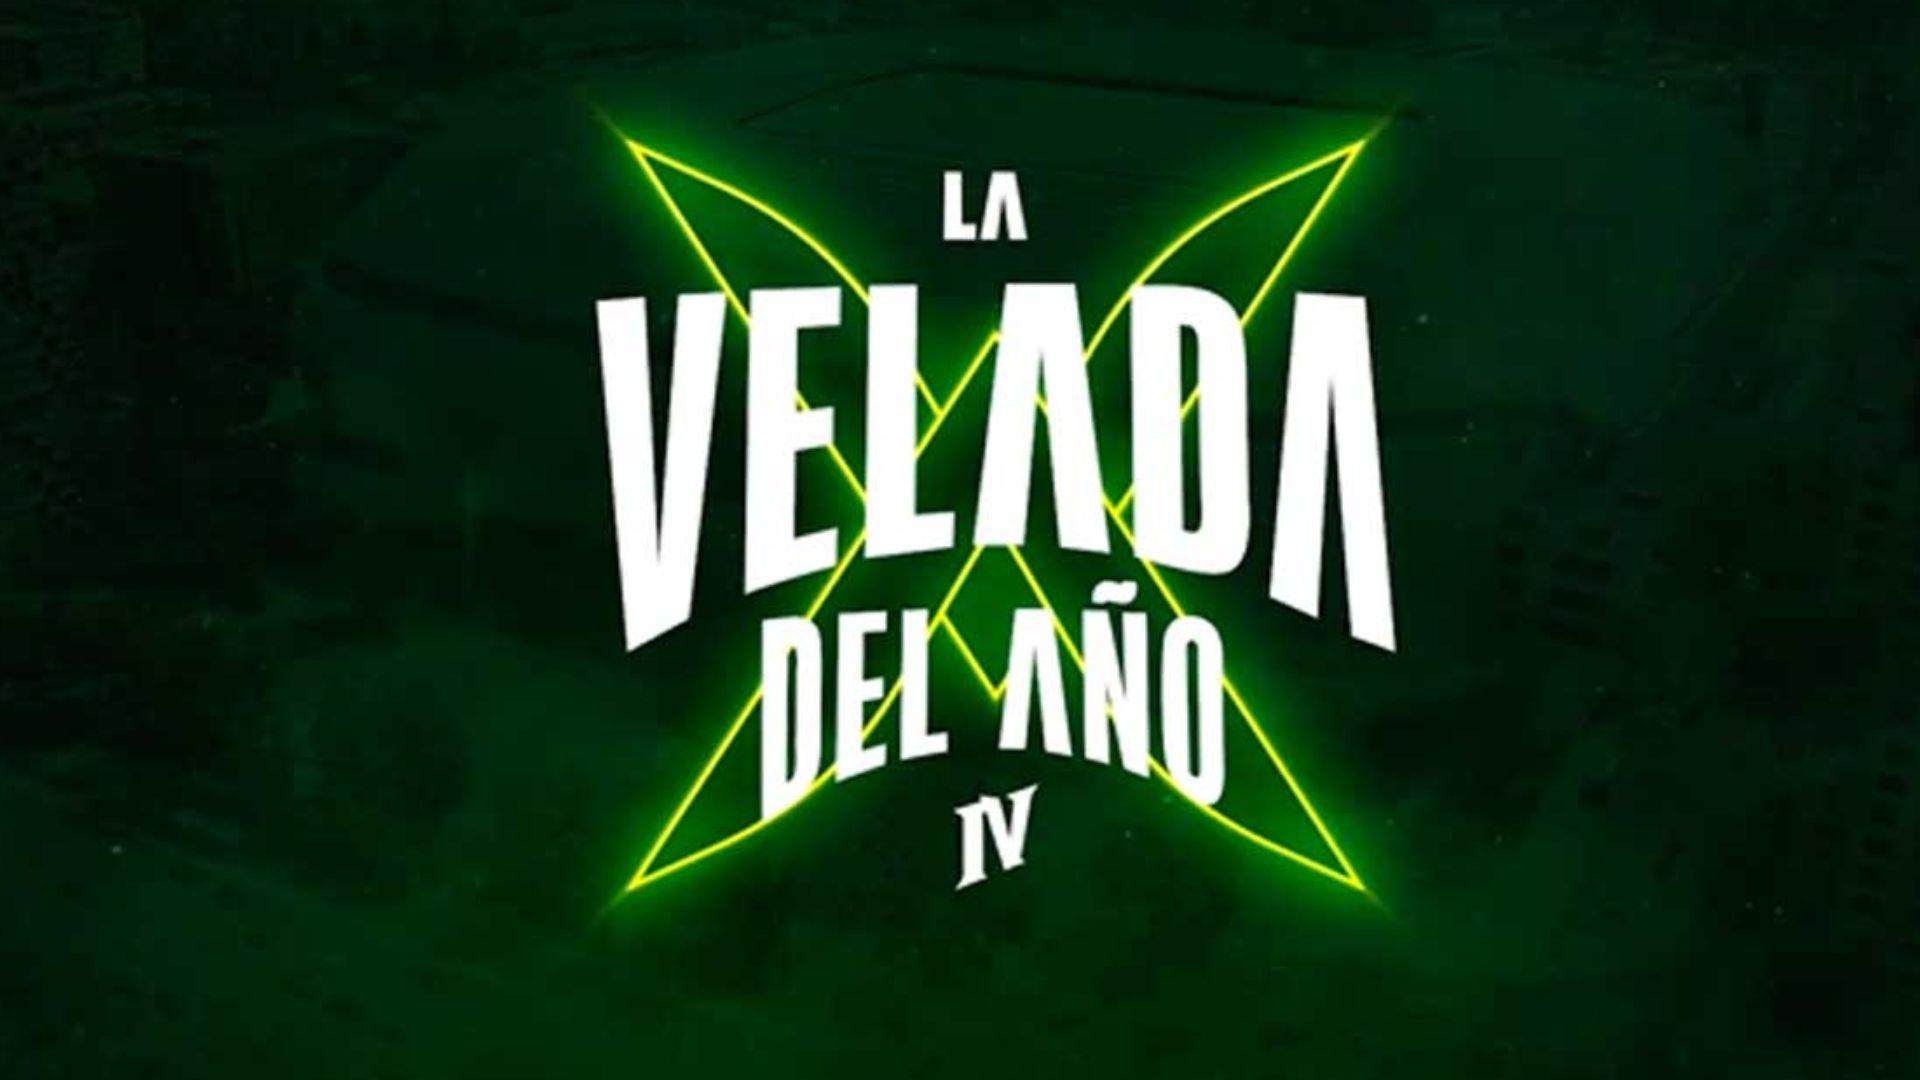 Green La Velada del Ano 4 logo for Ibai twitch stream